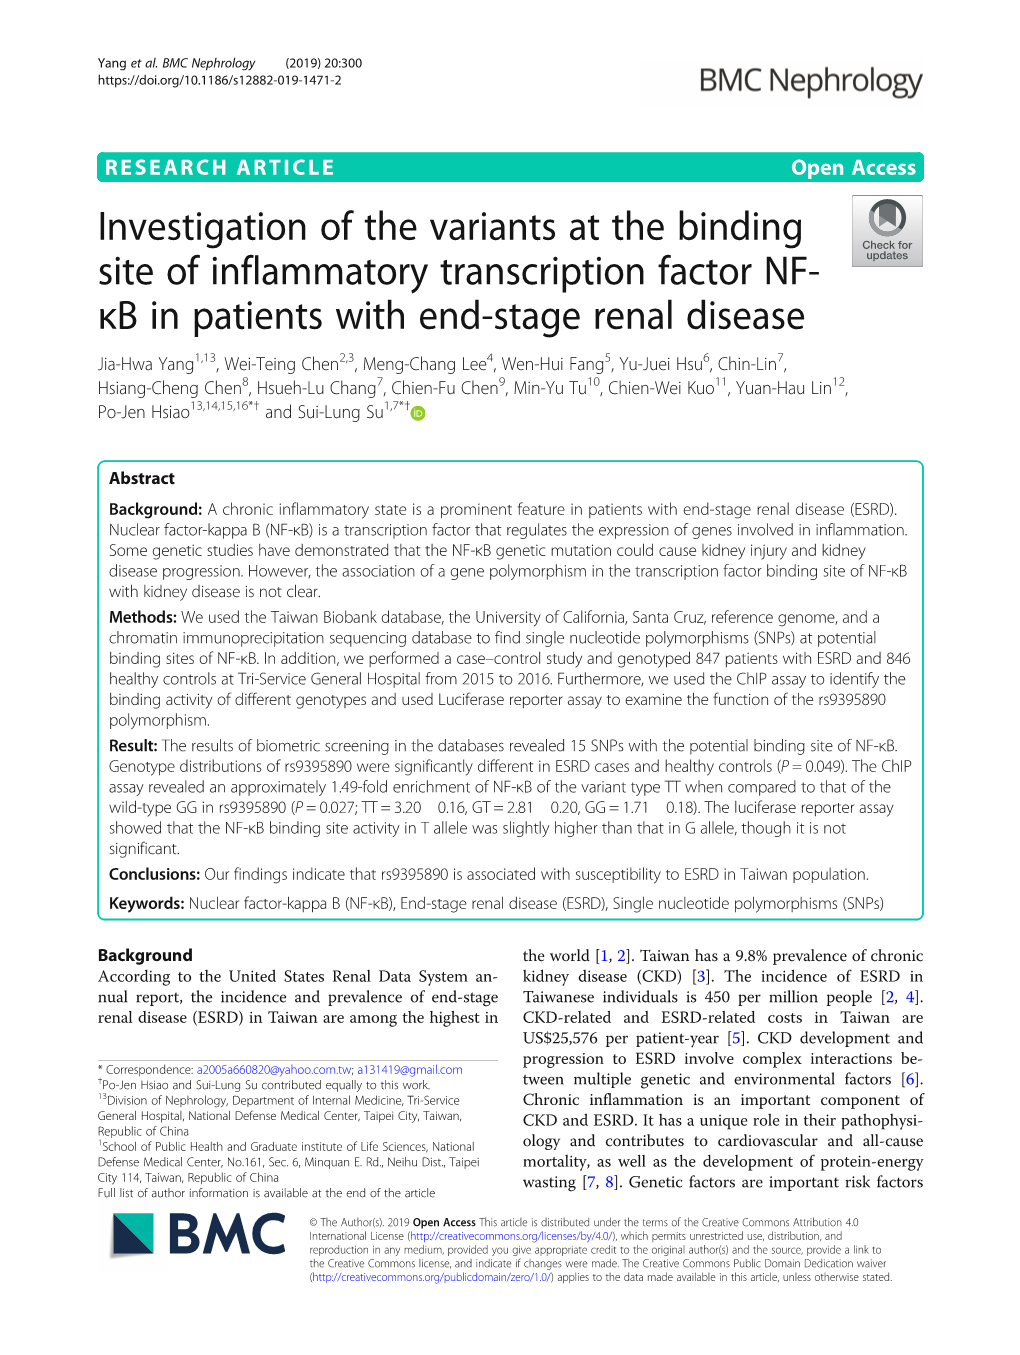 Κb in Patients with End-Stage Renal Disease